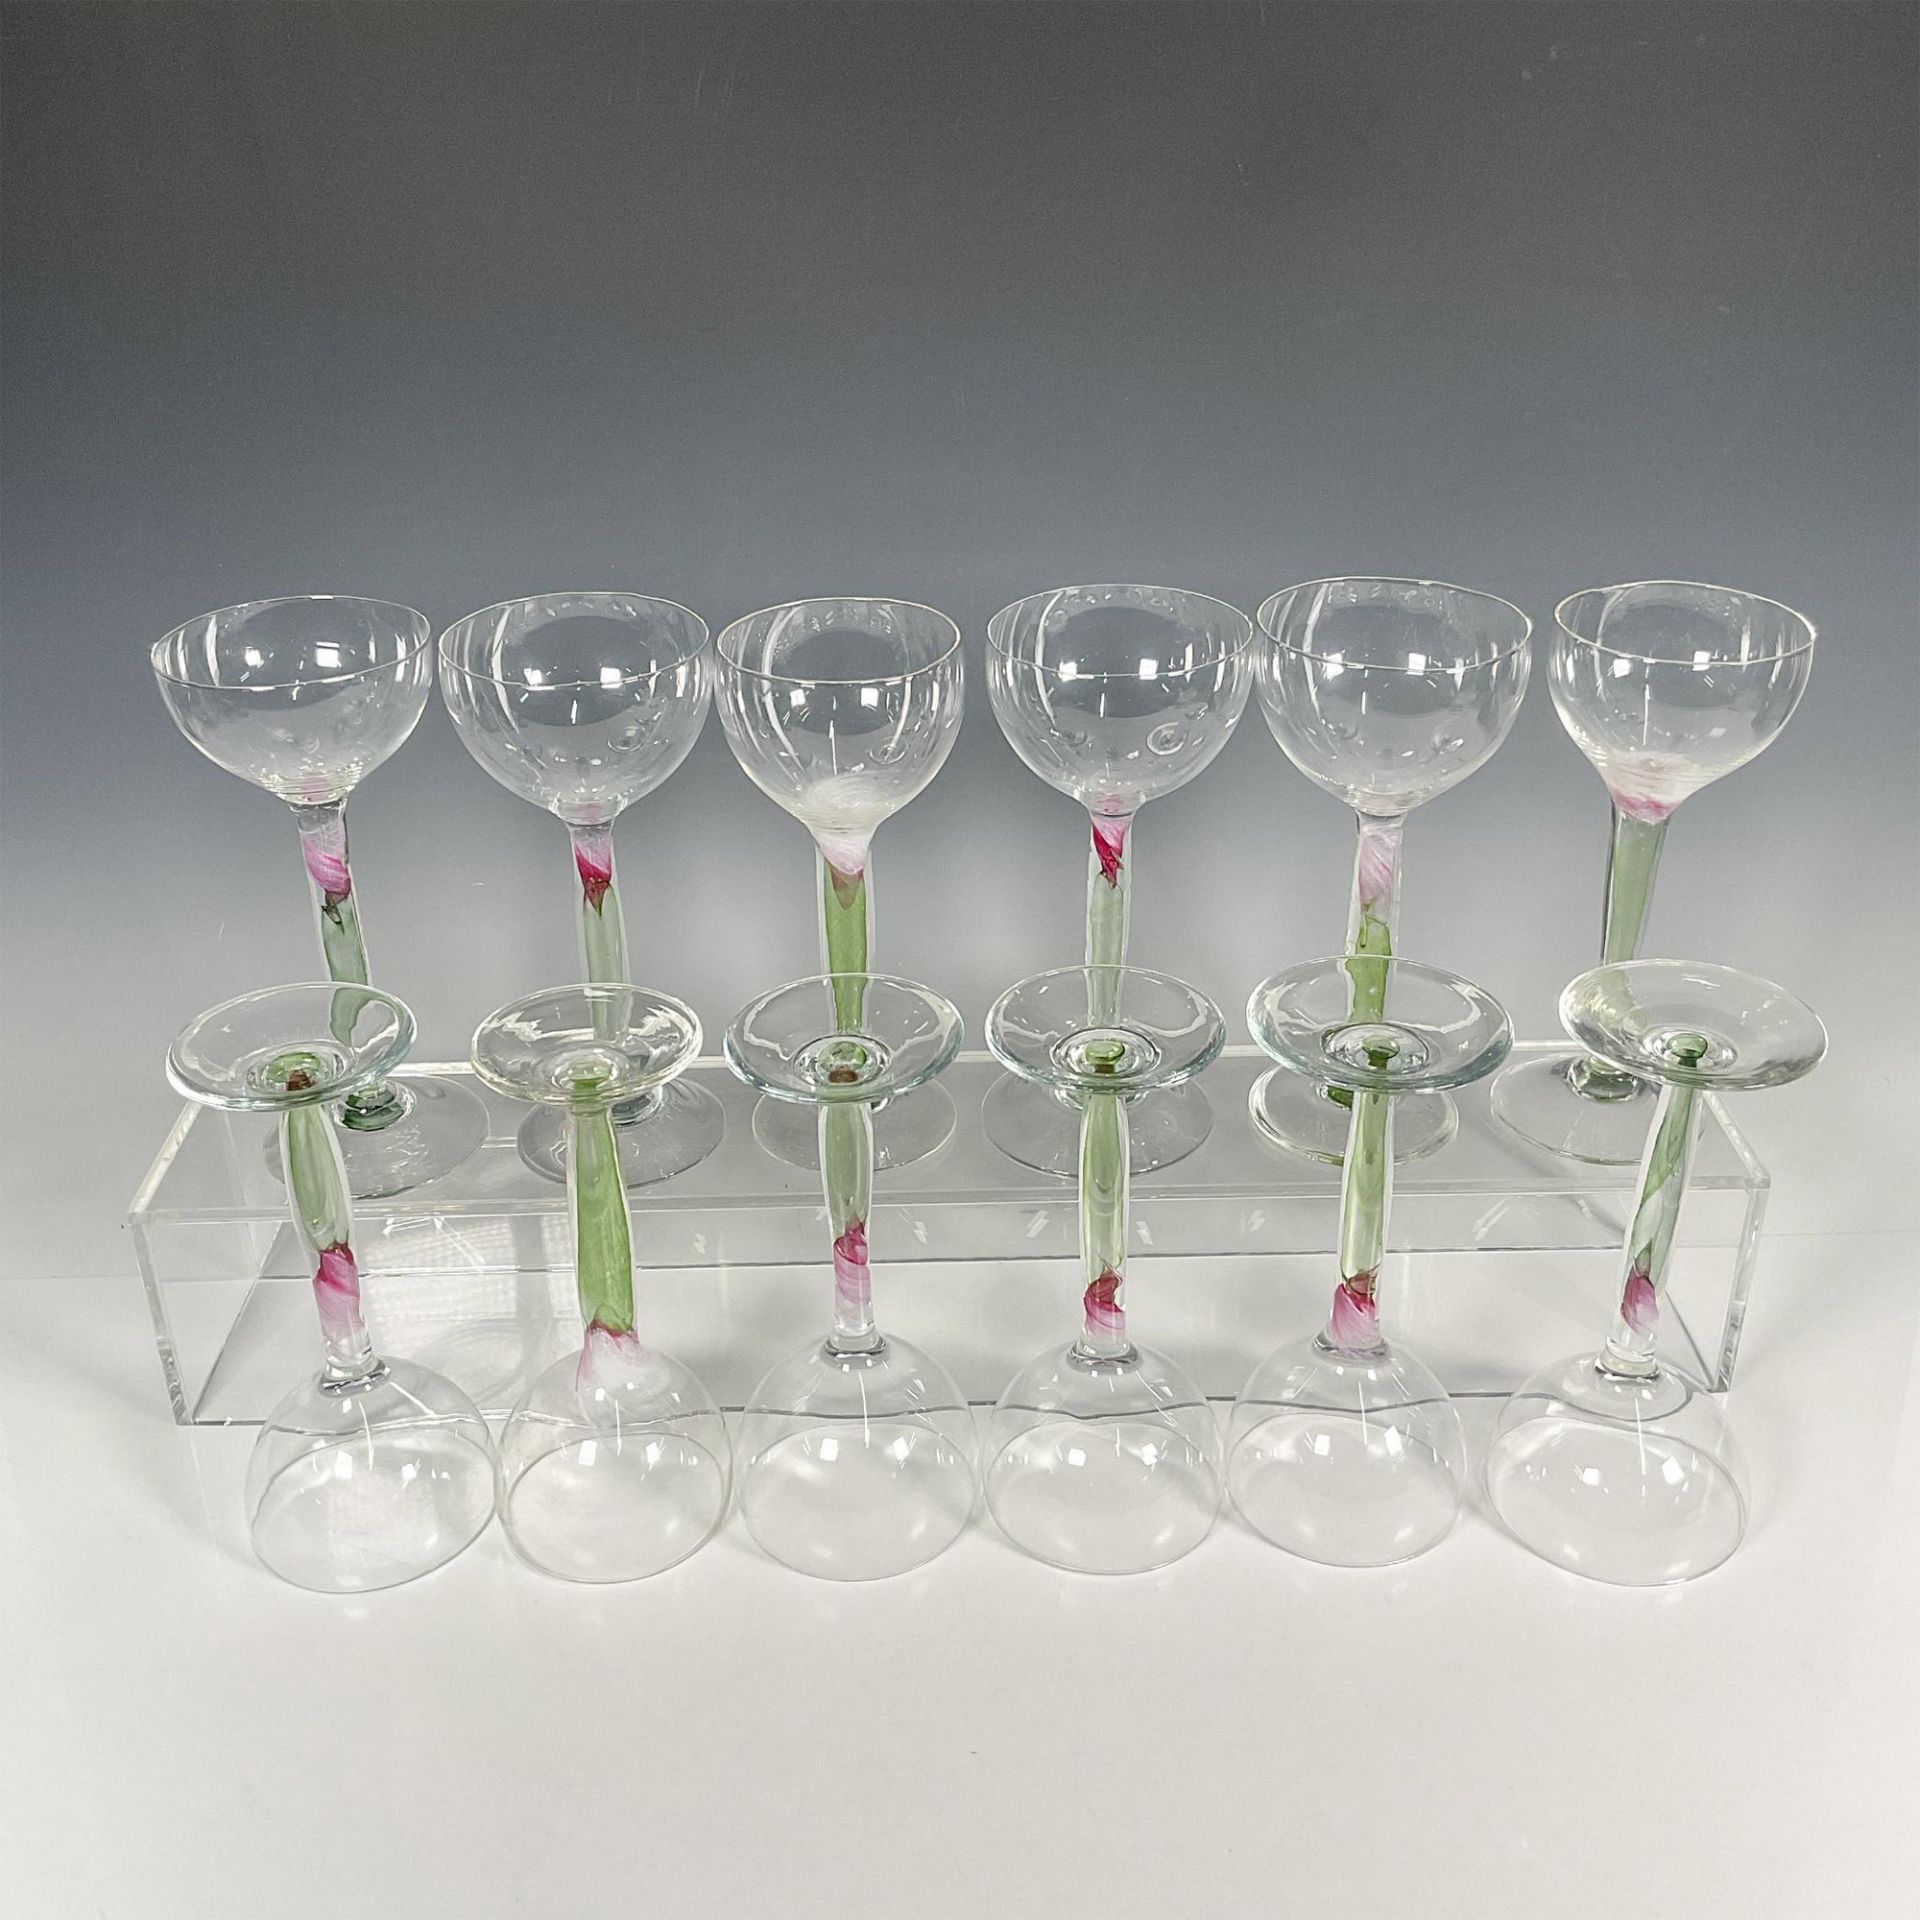 12pc Chris Baker Salmon Wine Glasses, Pink Flower Stem - Image 3 of 6